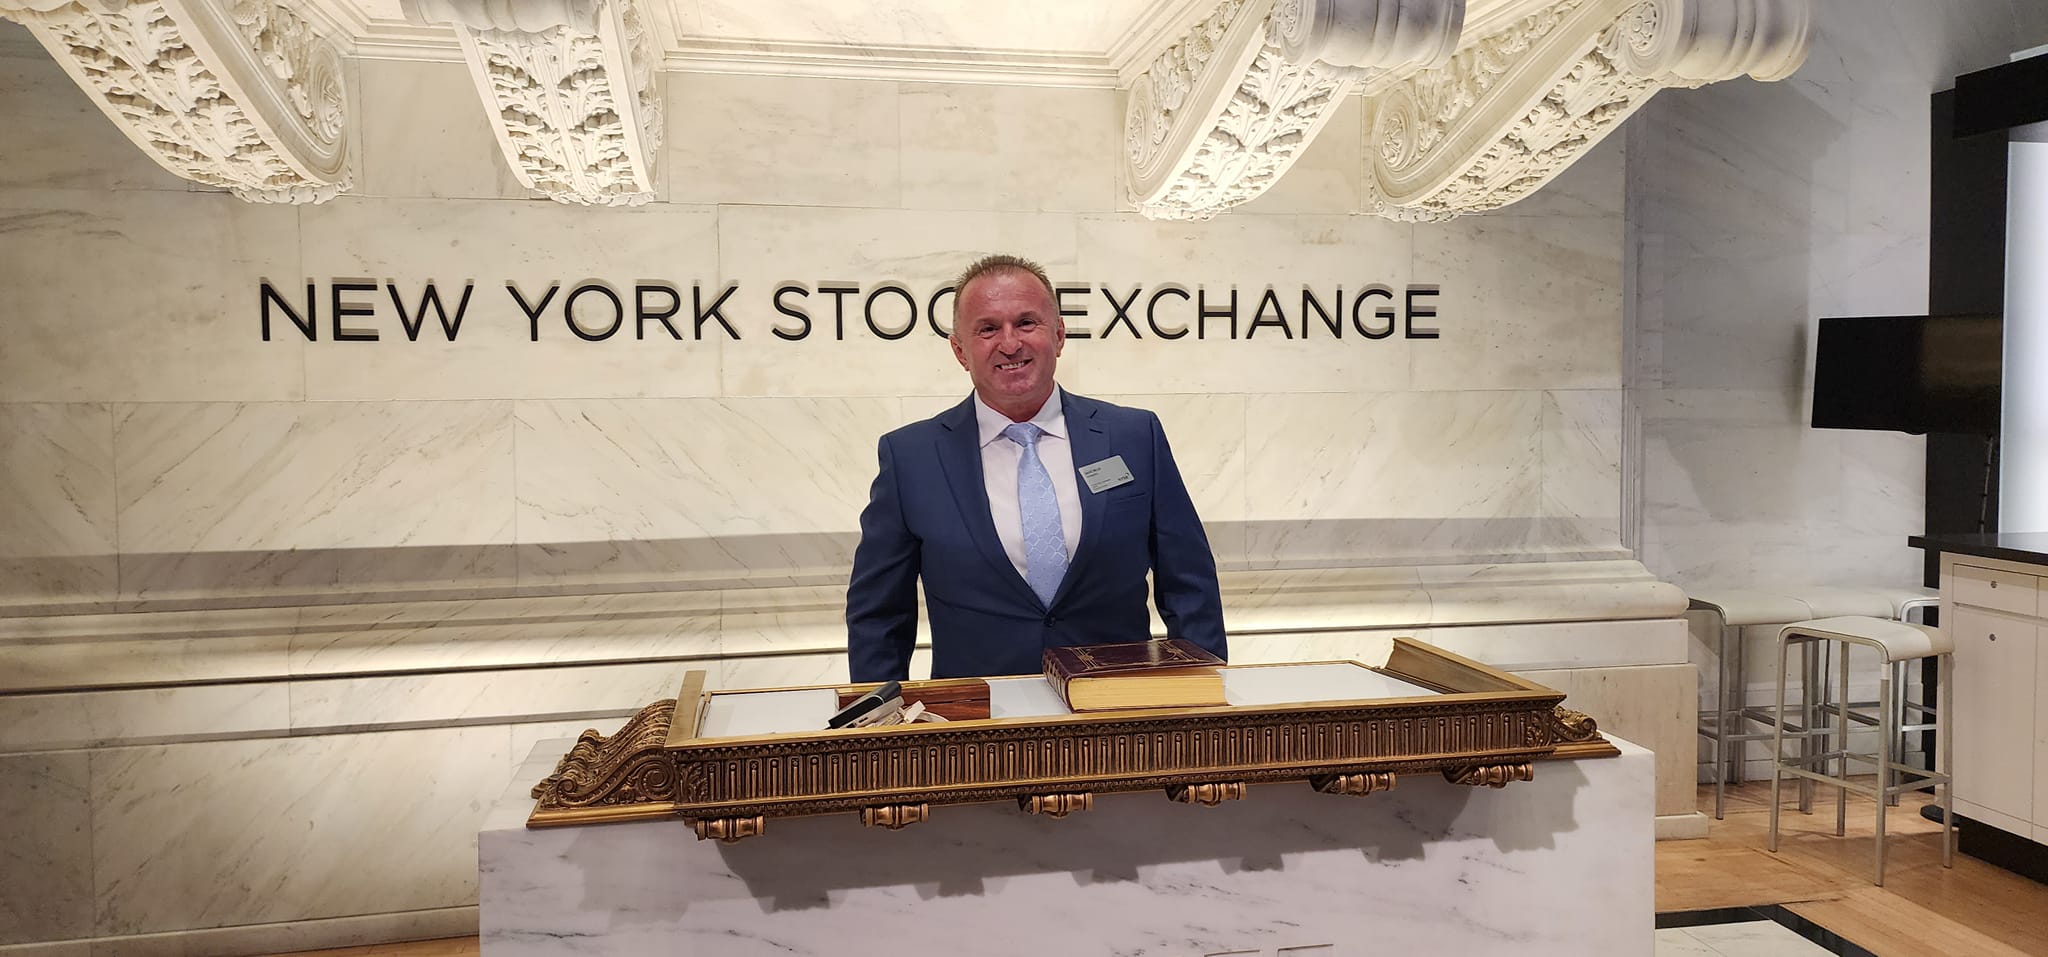 Sahit Muja New York Stock Exchange